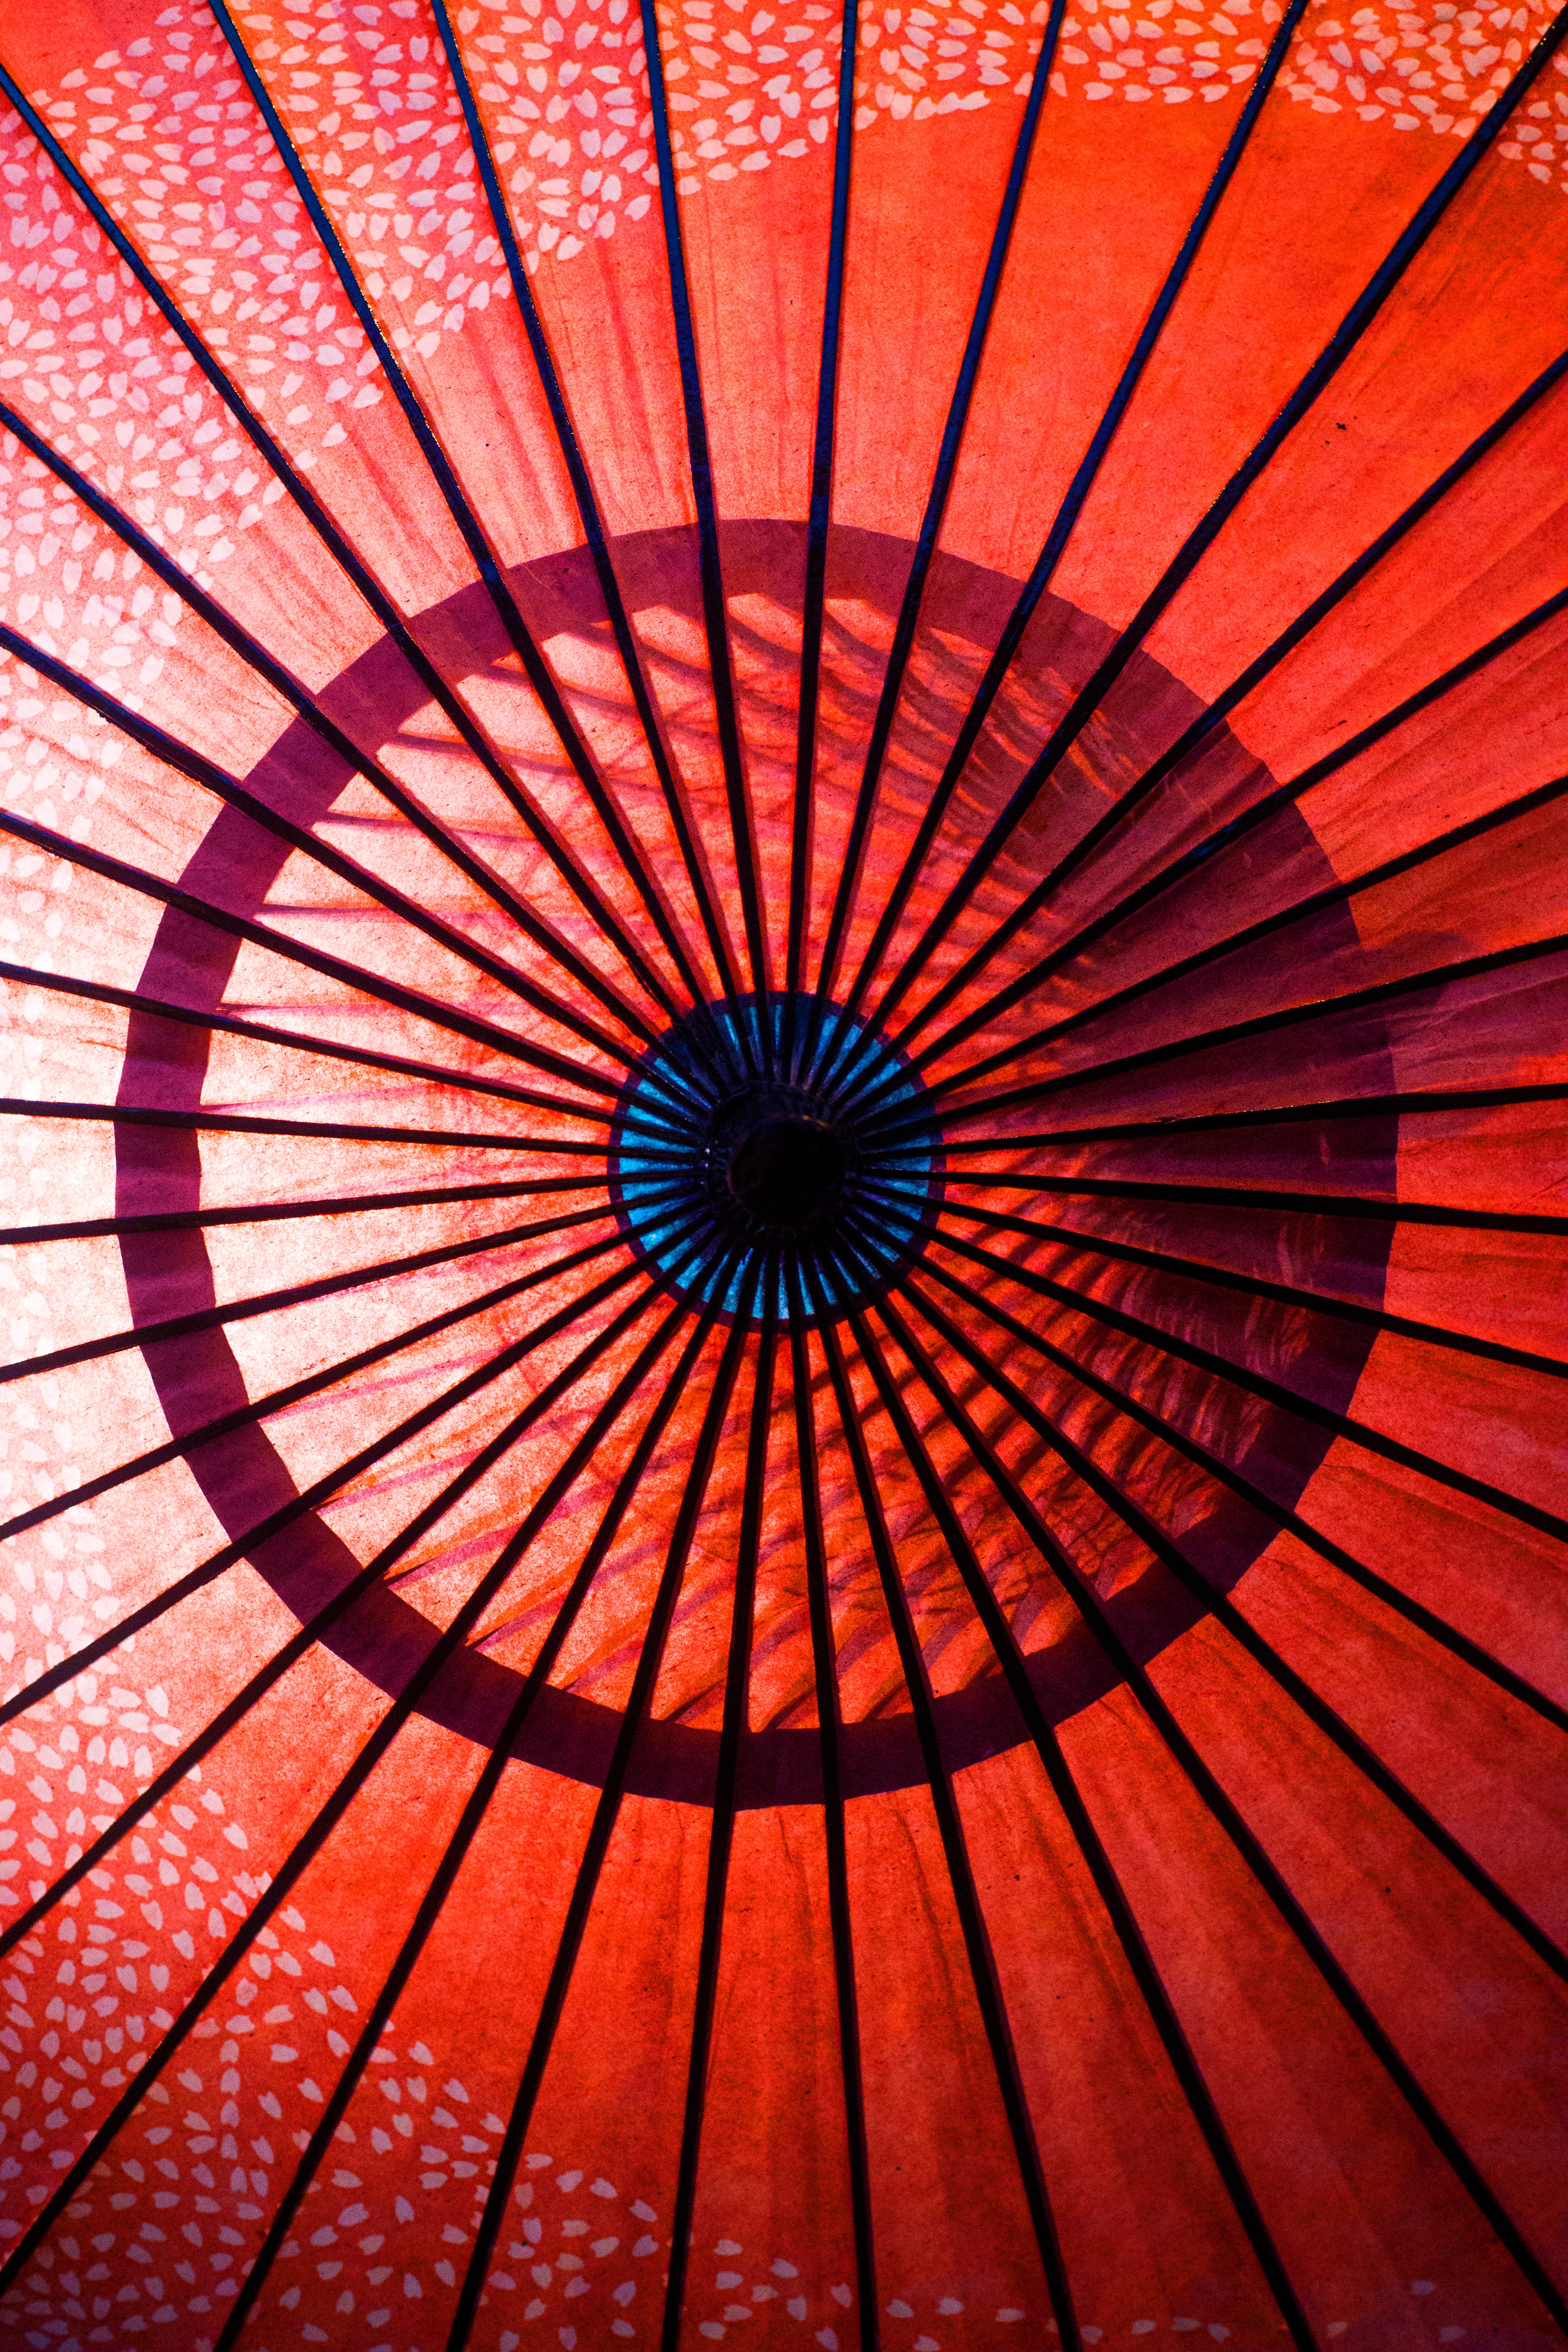 Red umbrella photo